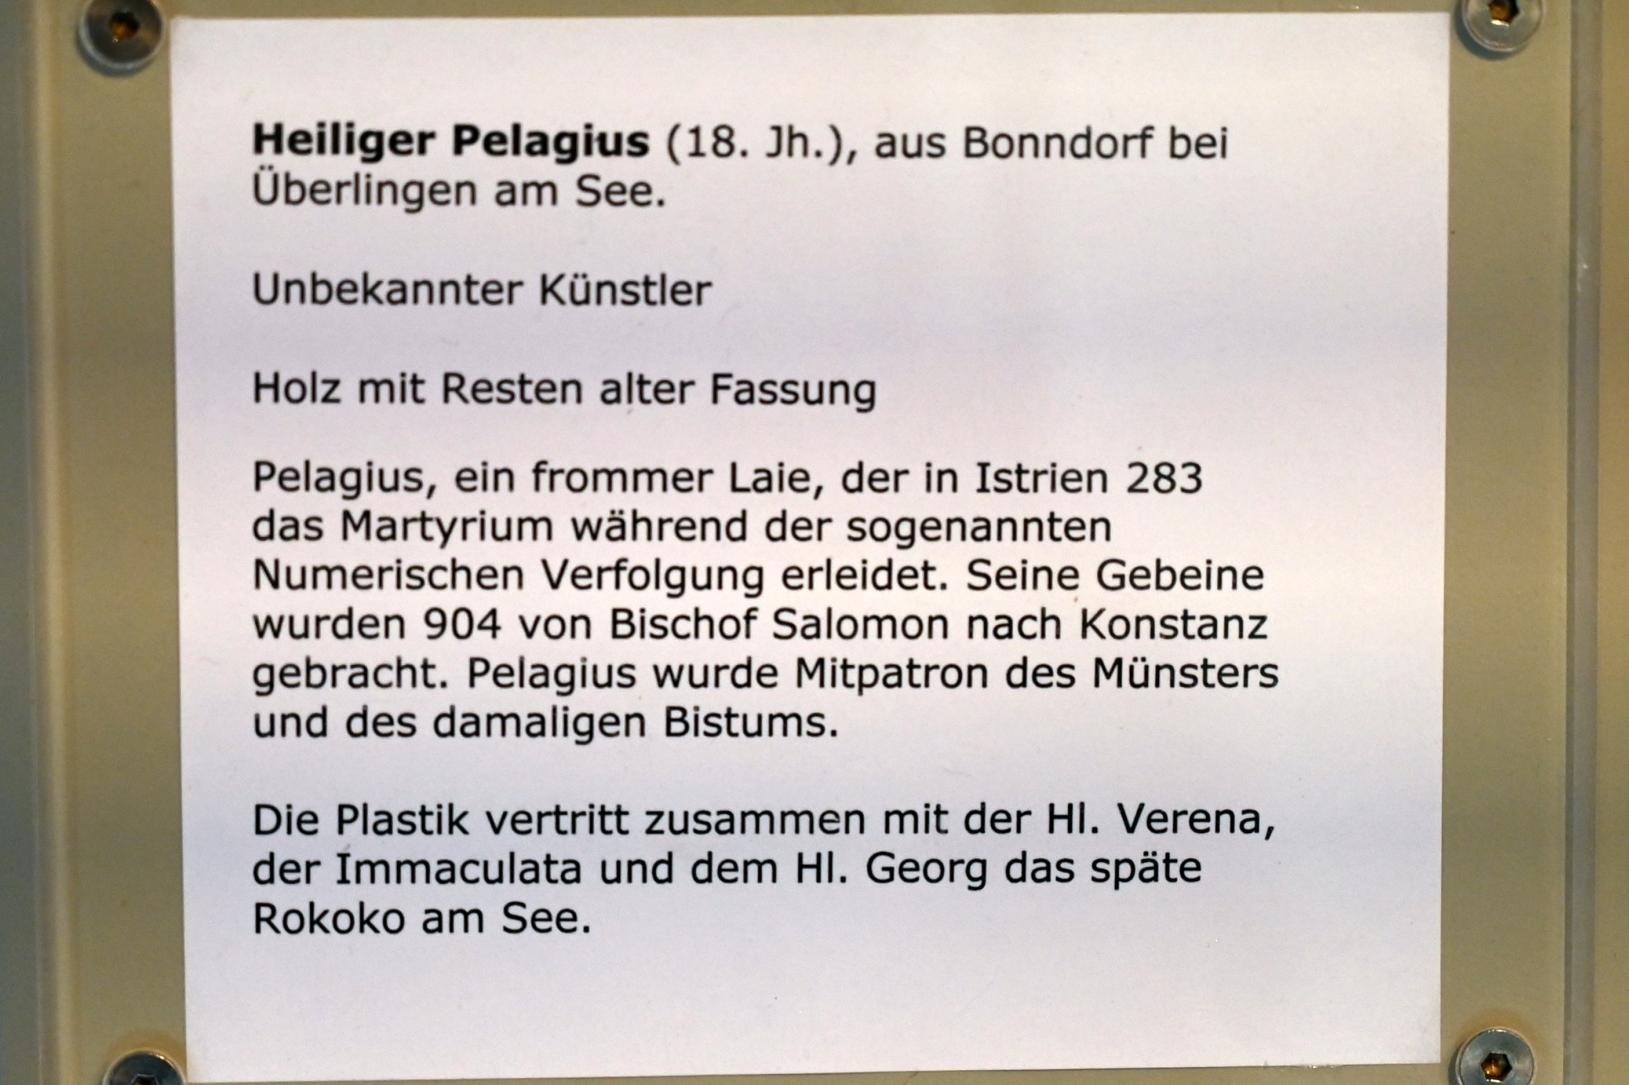 Heiliger Pelagius, Bonndorf (Überlingen), Kirche St. Pelagius, jetzt Überlingen, Städtisches Museum, Kleiner Barocksaal, 18. Jhd., Bild 4/4